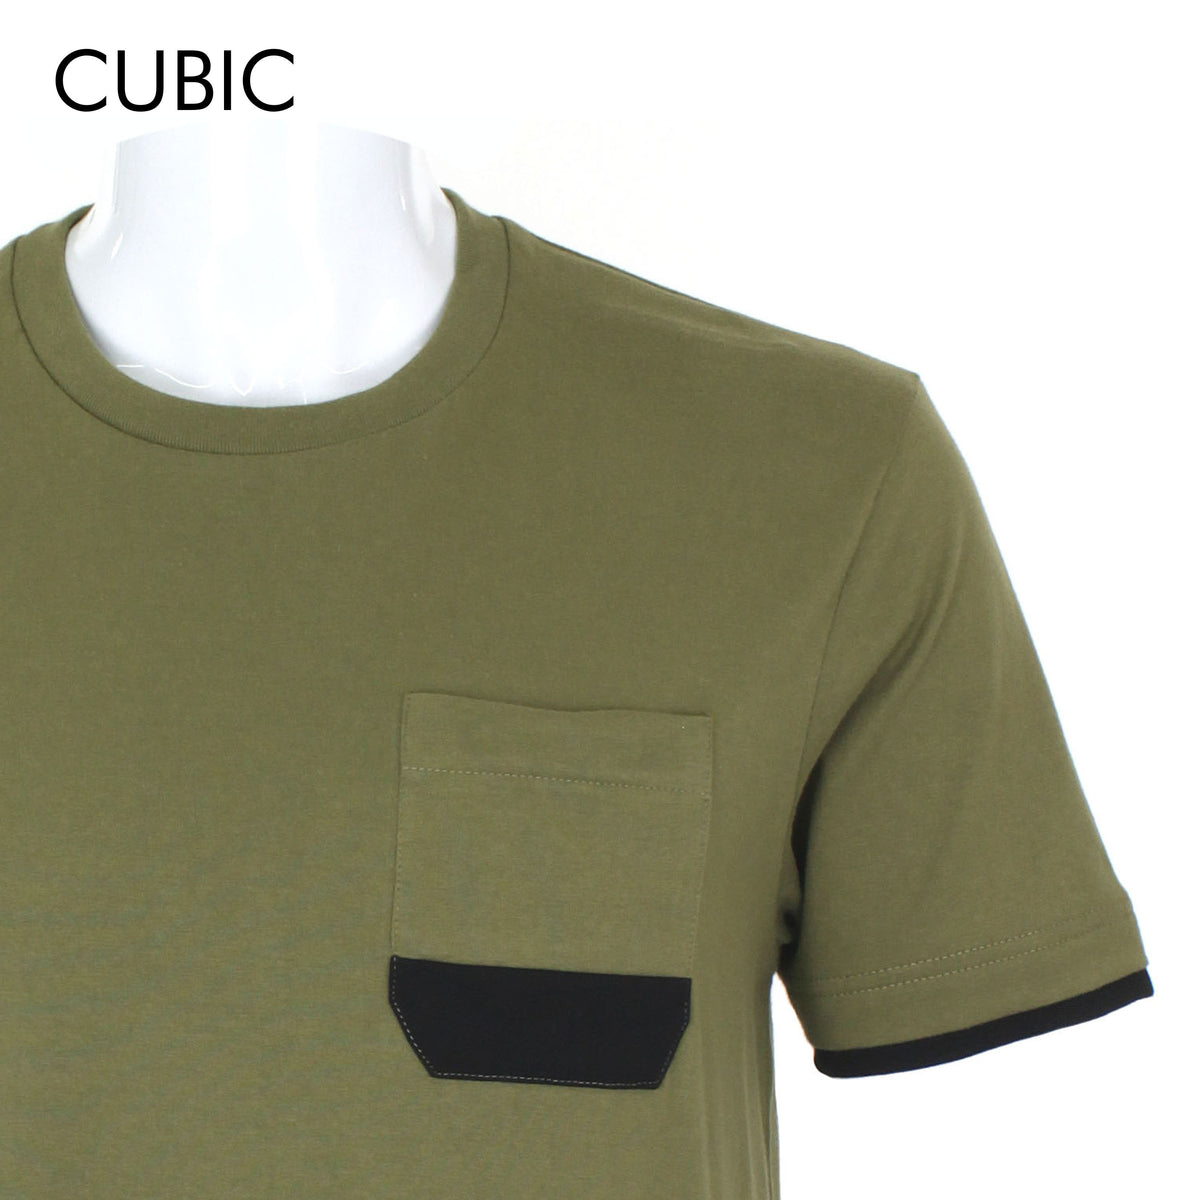 Cubic Men Round Neck Tees T-shirt Plain Shirt Top Top for Men - CMJ2240R